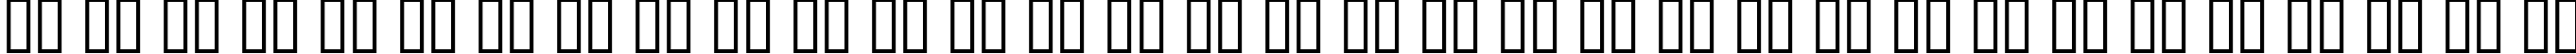 Пример написания русского алфавита шрифтом AucoinExtBol